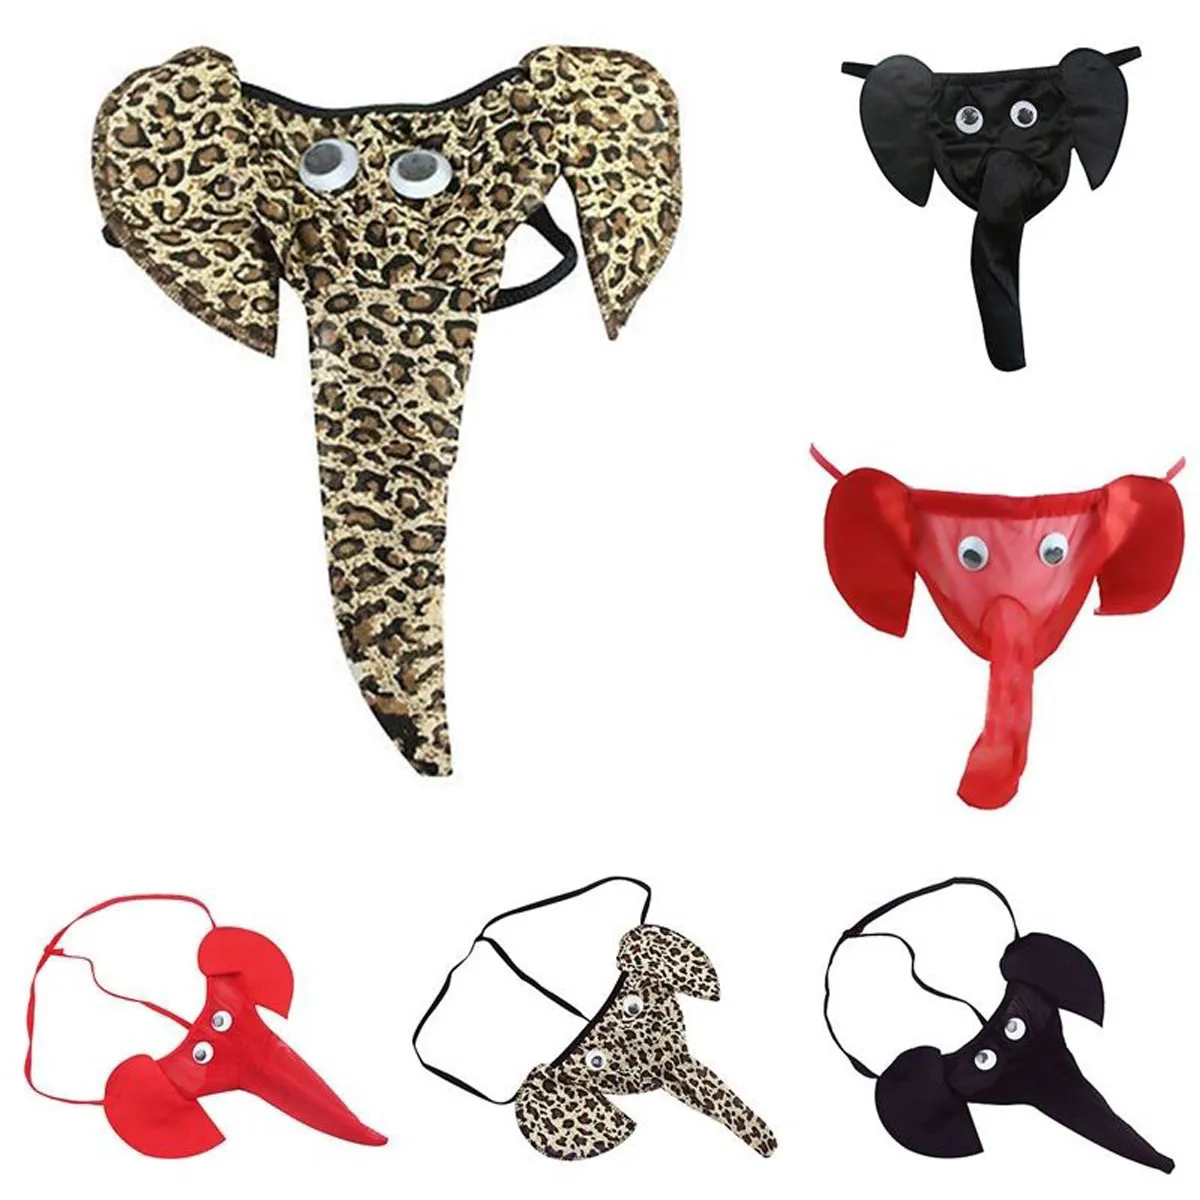 Brinquedos eróticos sm bondage sexy para masculino g strings racha de roupas íntimas toca de calça de elefante sexyy games adultos